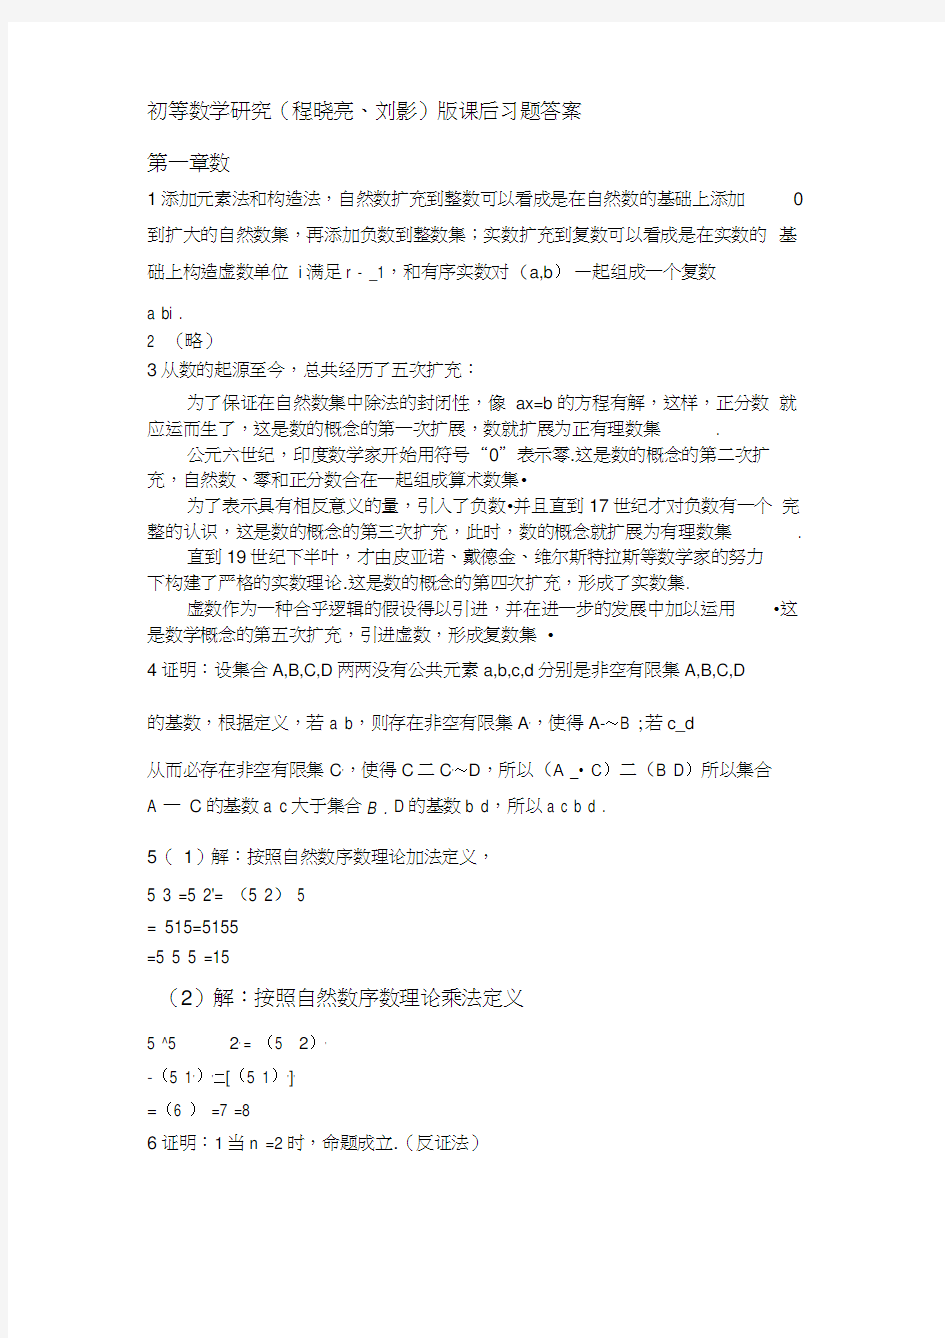 初等数学研究(程晓亮、刘影)版课后习题答案